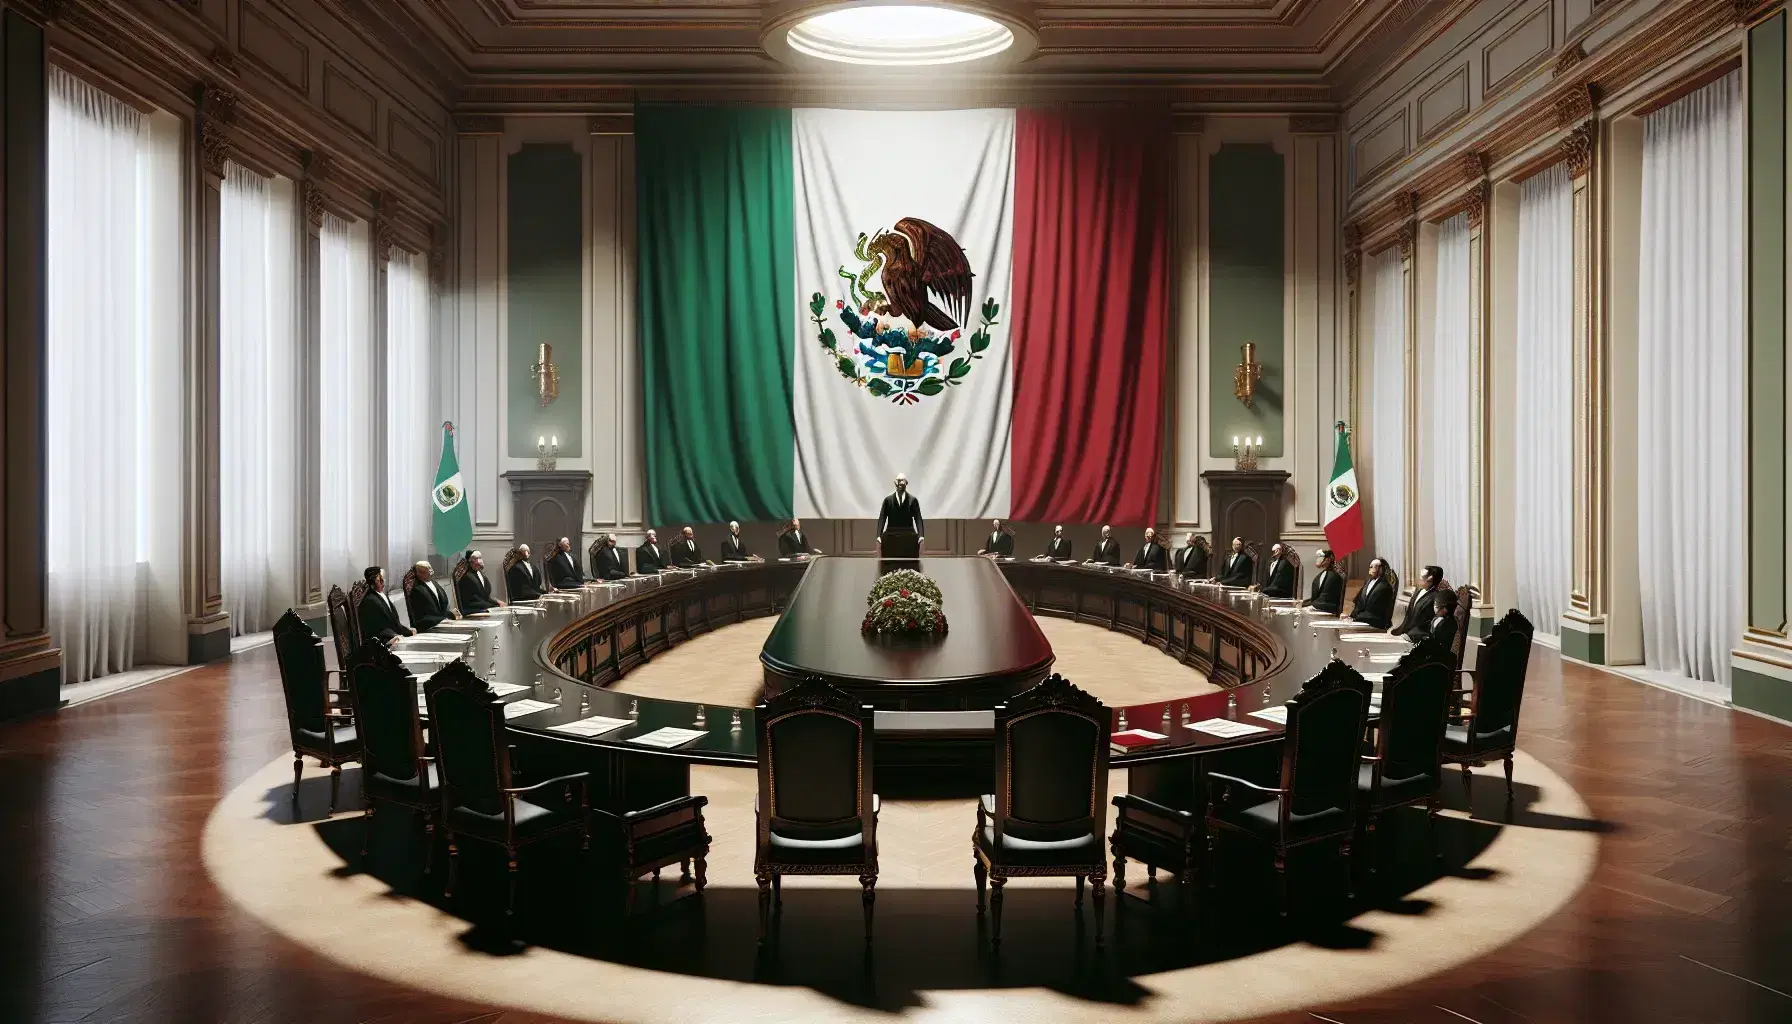 Sala de reuniones formal con mesa ovalada de madera oscura, sillas clásicas y bandera de México, con una persona de pie hablando y otras escuchando.